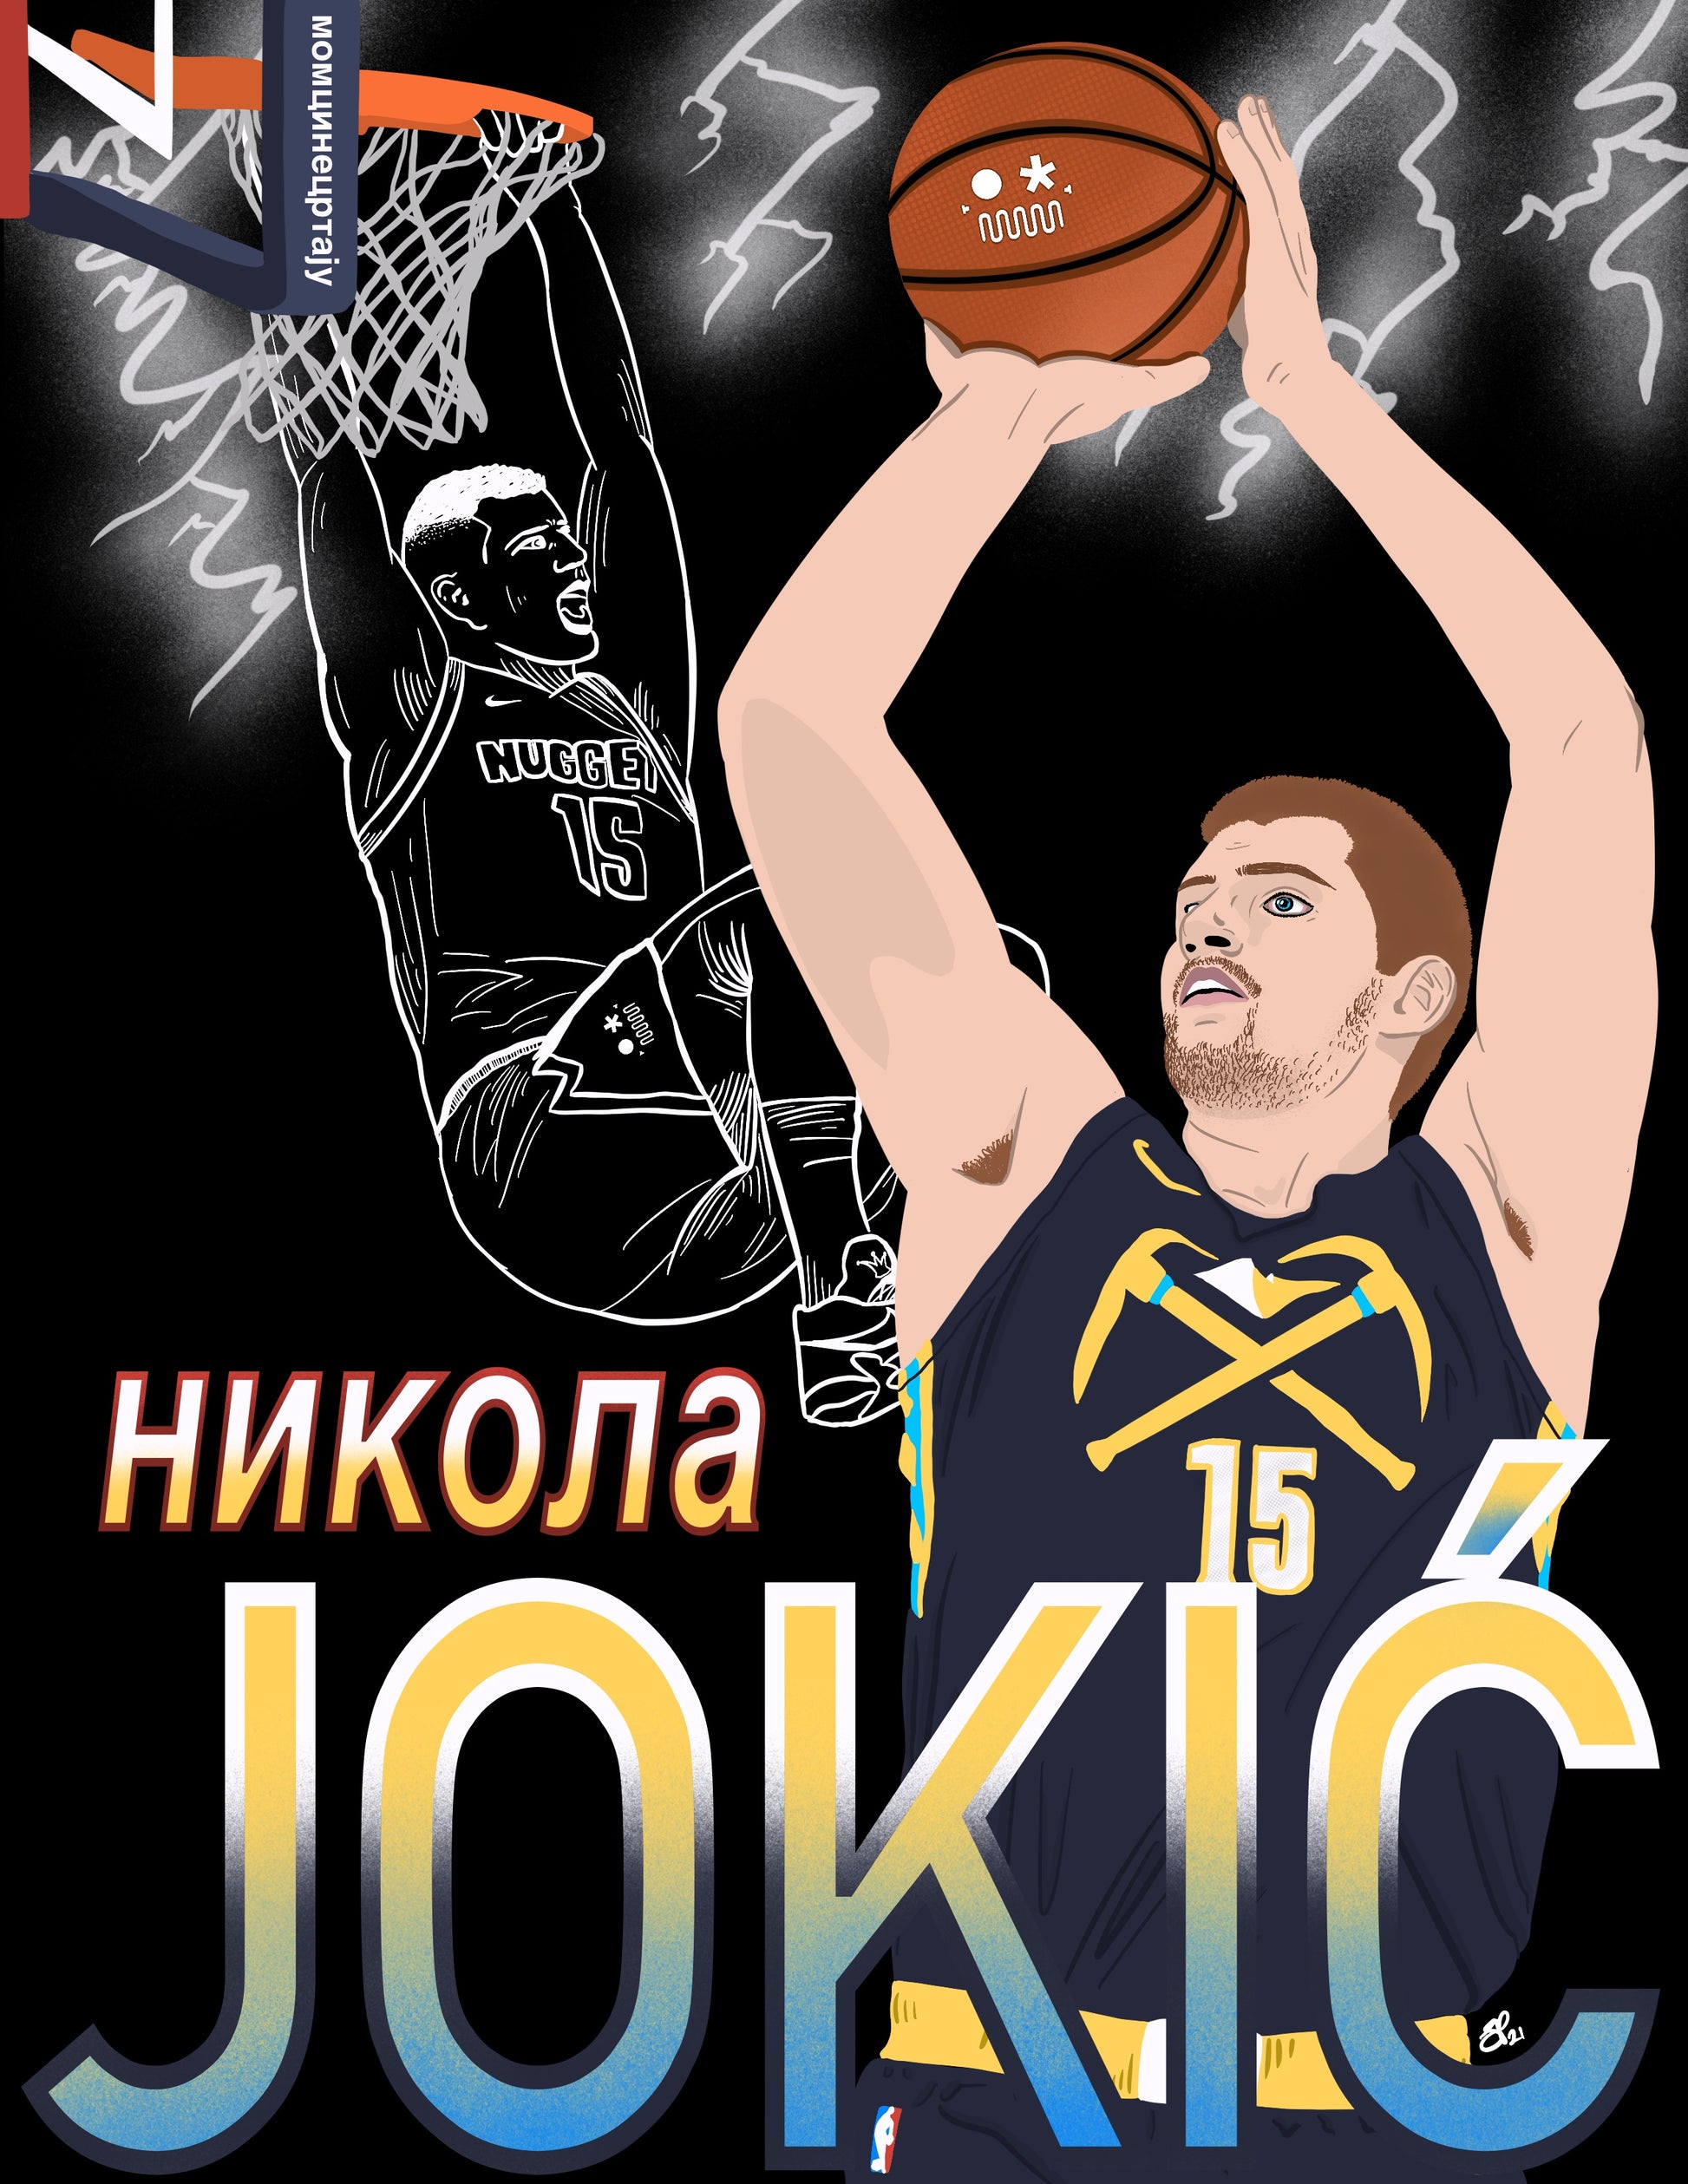 JOKIĆ - Limited Print - BOYSDONTDRAW